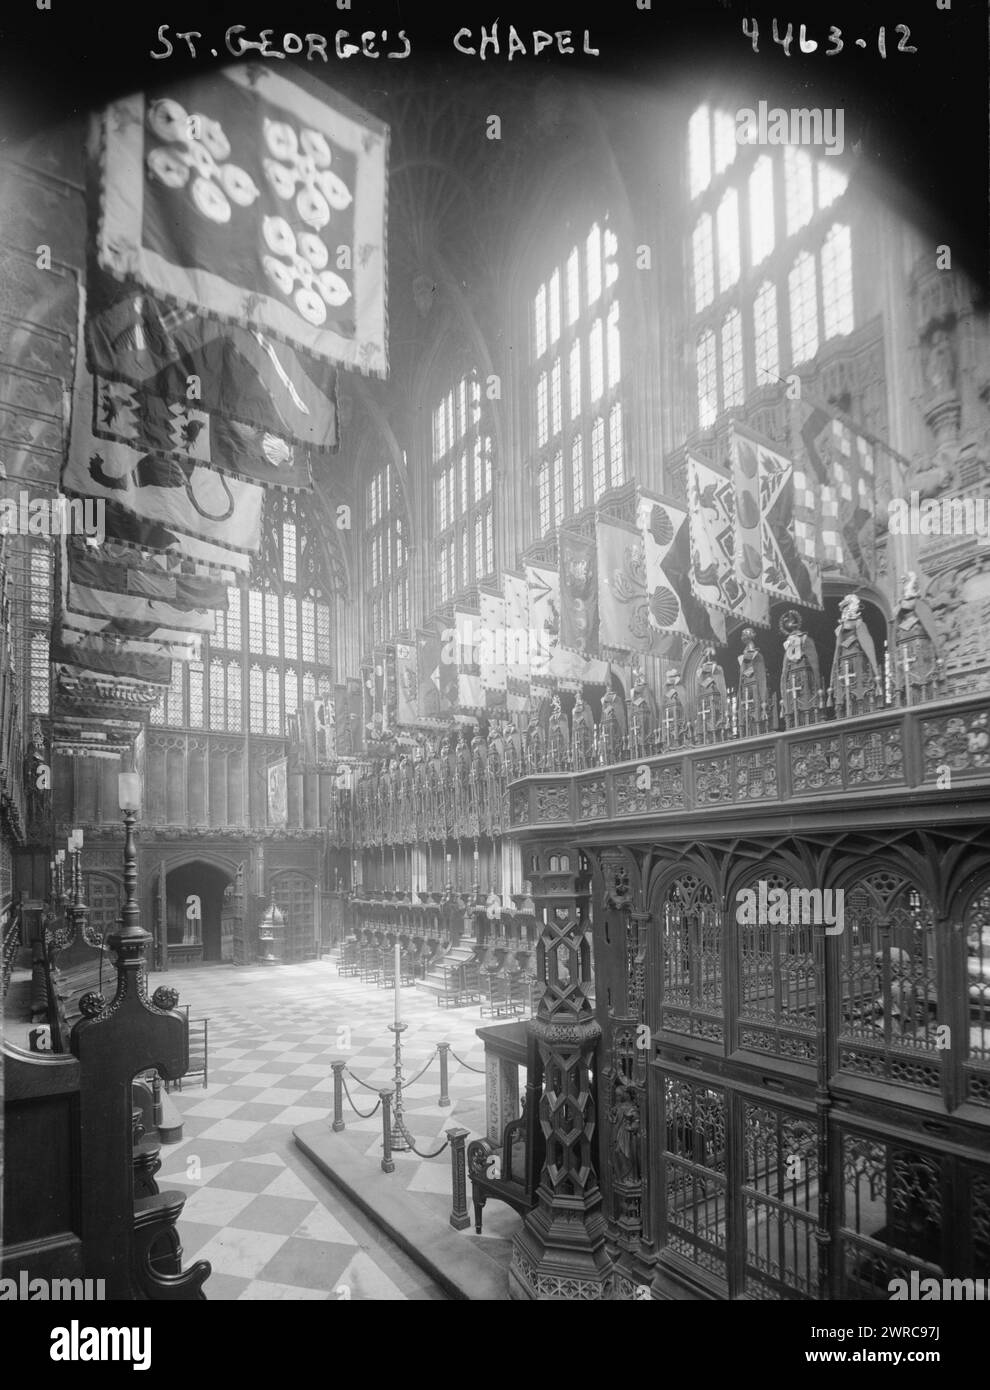 St George's Chapel, la fotografia mostra l'interno di St George's Chapel al Castello di Windsor, in Gran Bretagna, con striscioni appartenenti ai Cavalieri della Giarrettiera., tra ca. 1915 e ca. 1920, Glass negative, 1 negativo: Glass Foto Stock